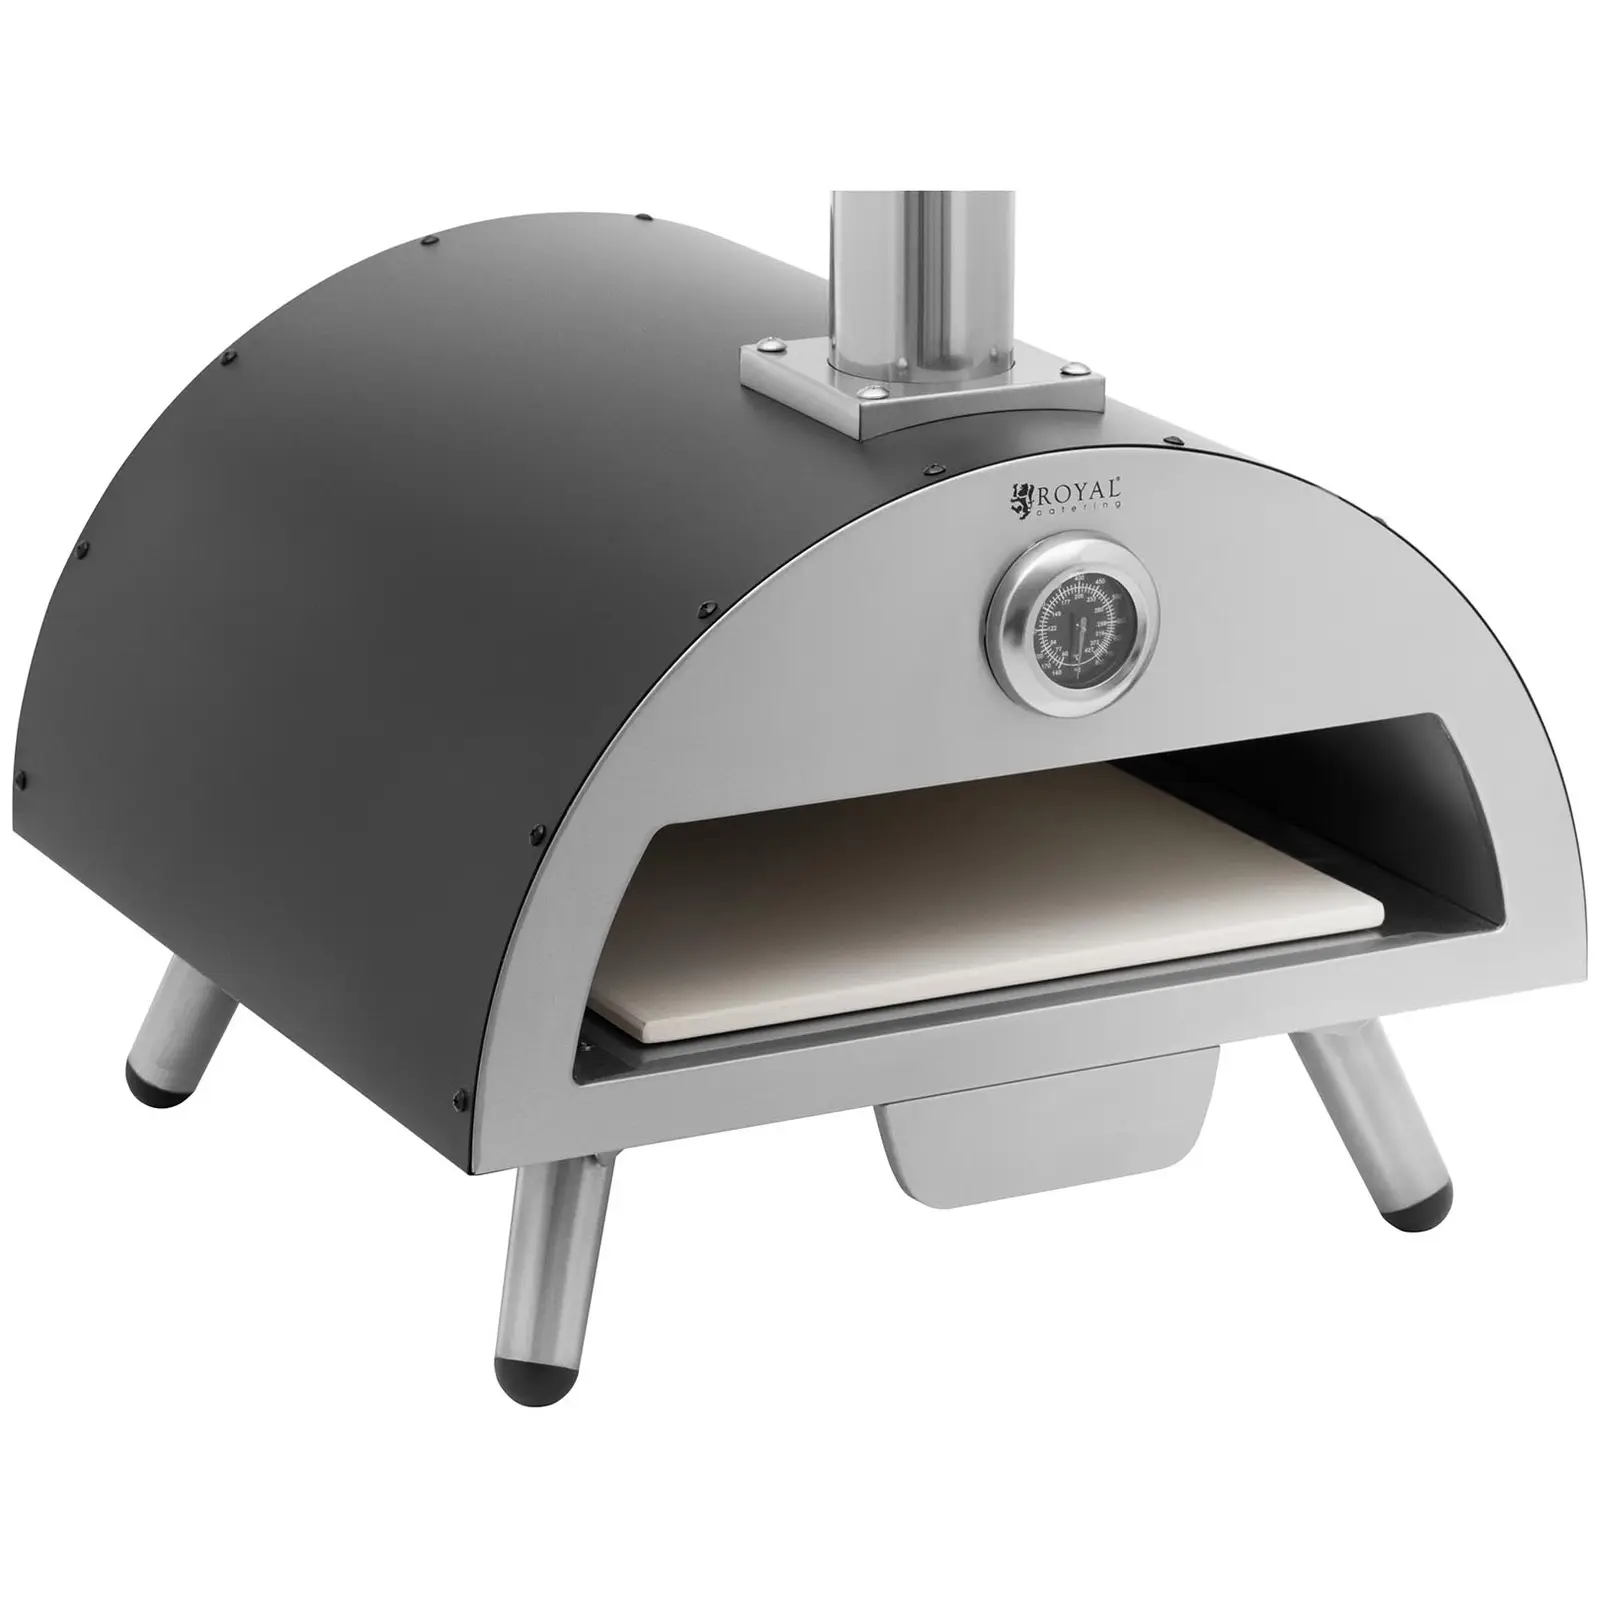 Horno de leña para pizza - cordierita - 190 °C - Ø 33 cm - Royal Catering